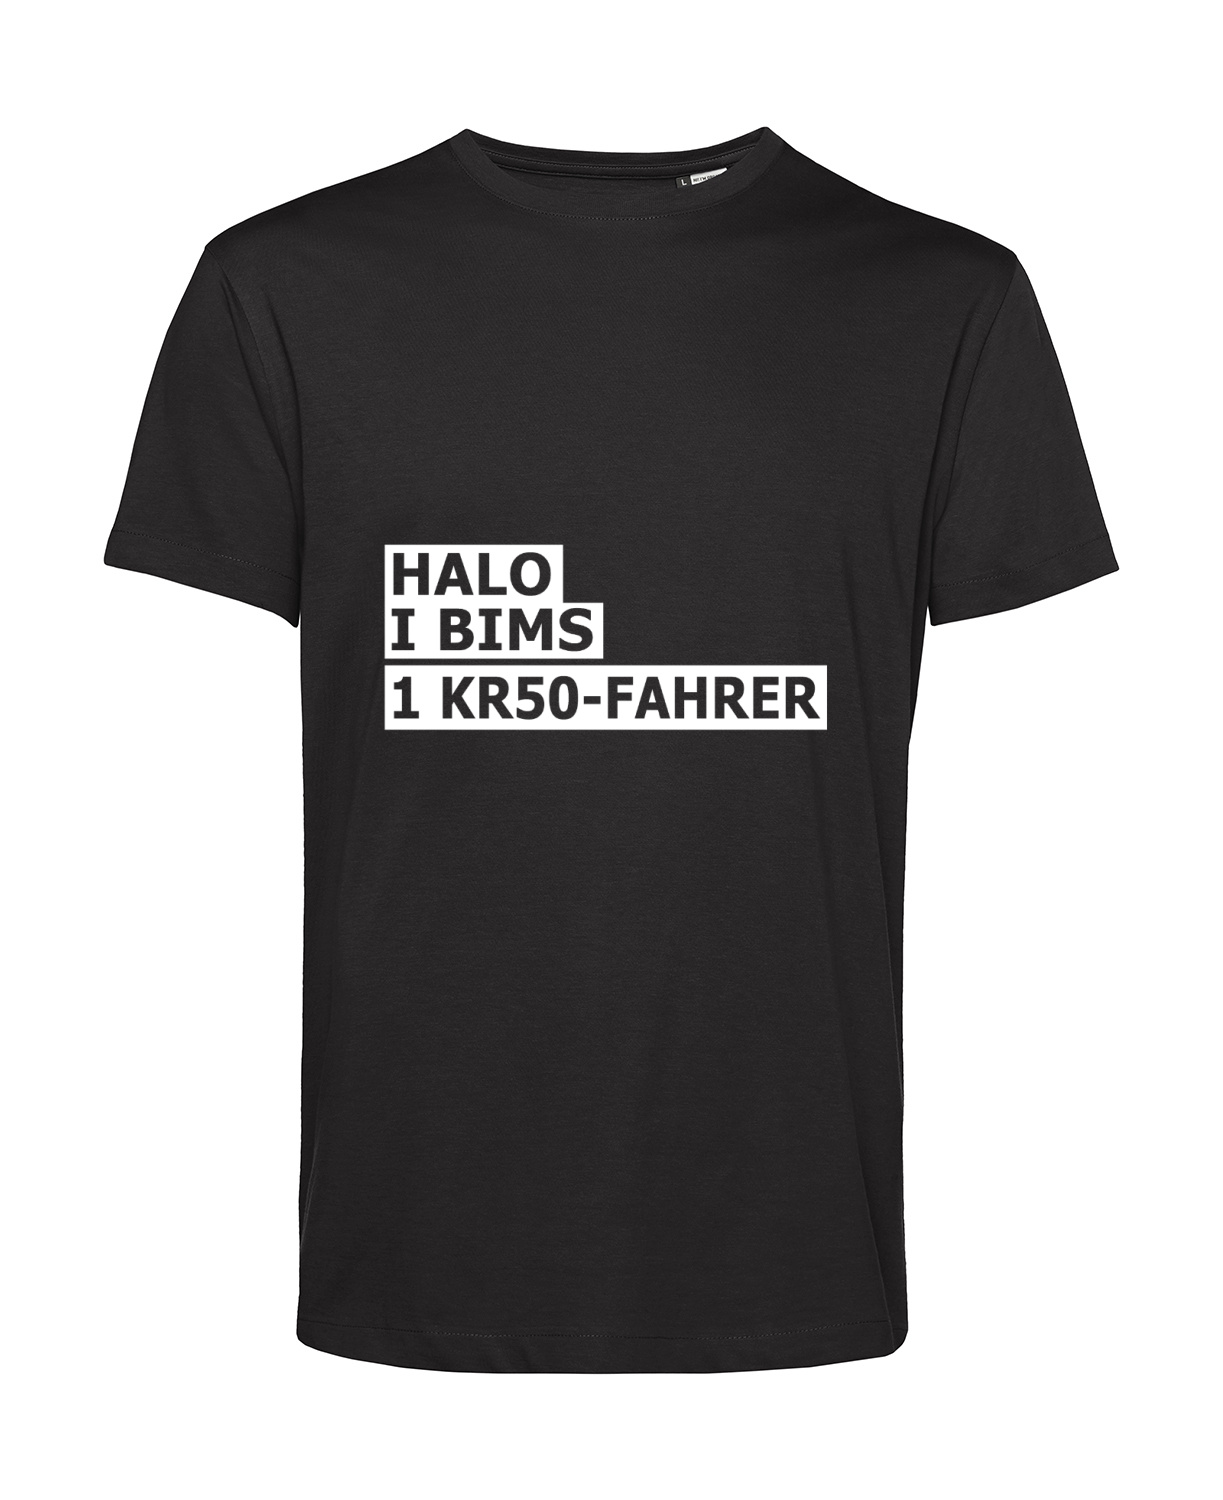 Nachhaltiges T-Shirt Herren 2Takter - Halo I bims 1 KR50-Fahrer